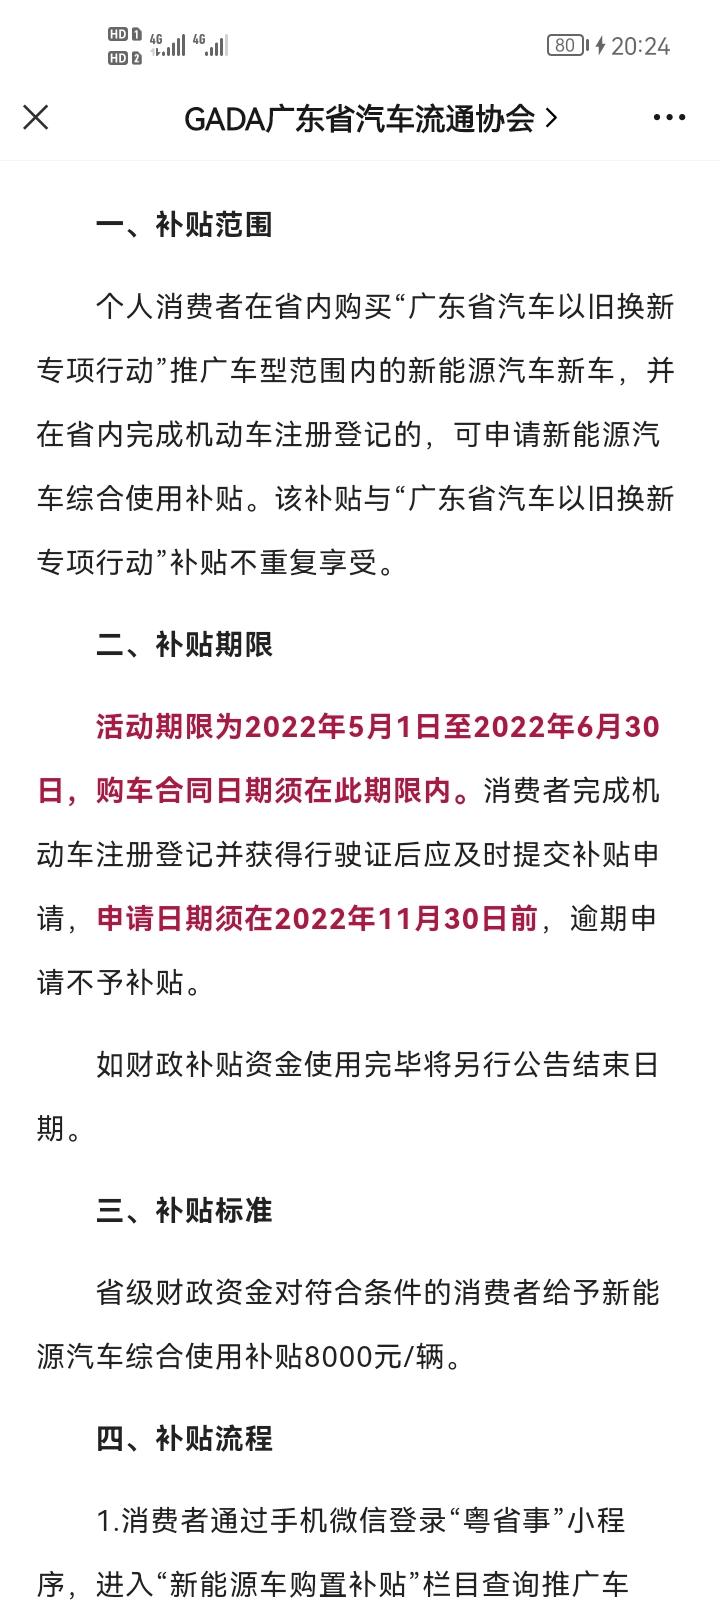 比亚迪宋PLUS EV 深圳5月1号开始购车补贴8000。气疯了 4月26号出票 就差几天损失了8000可以投诉索取80